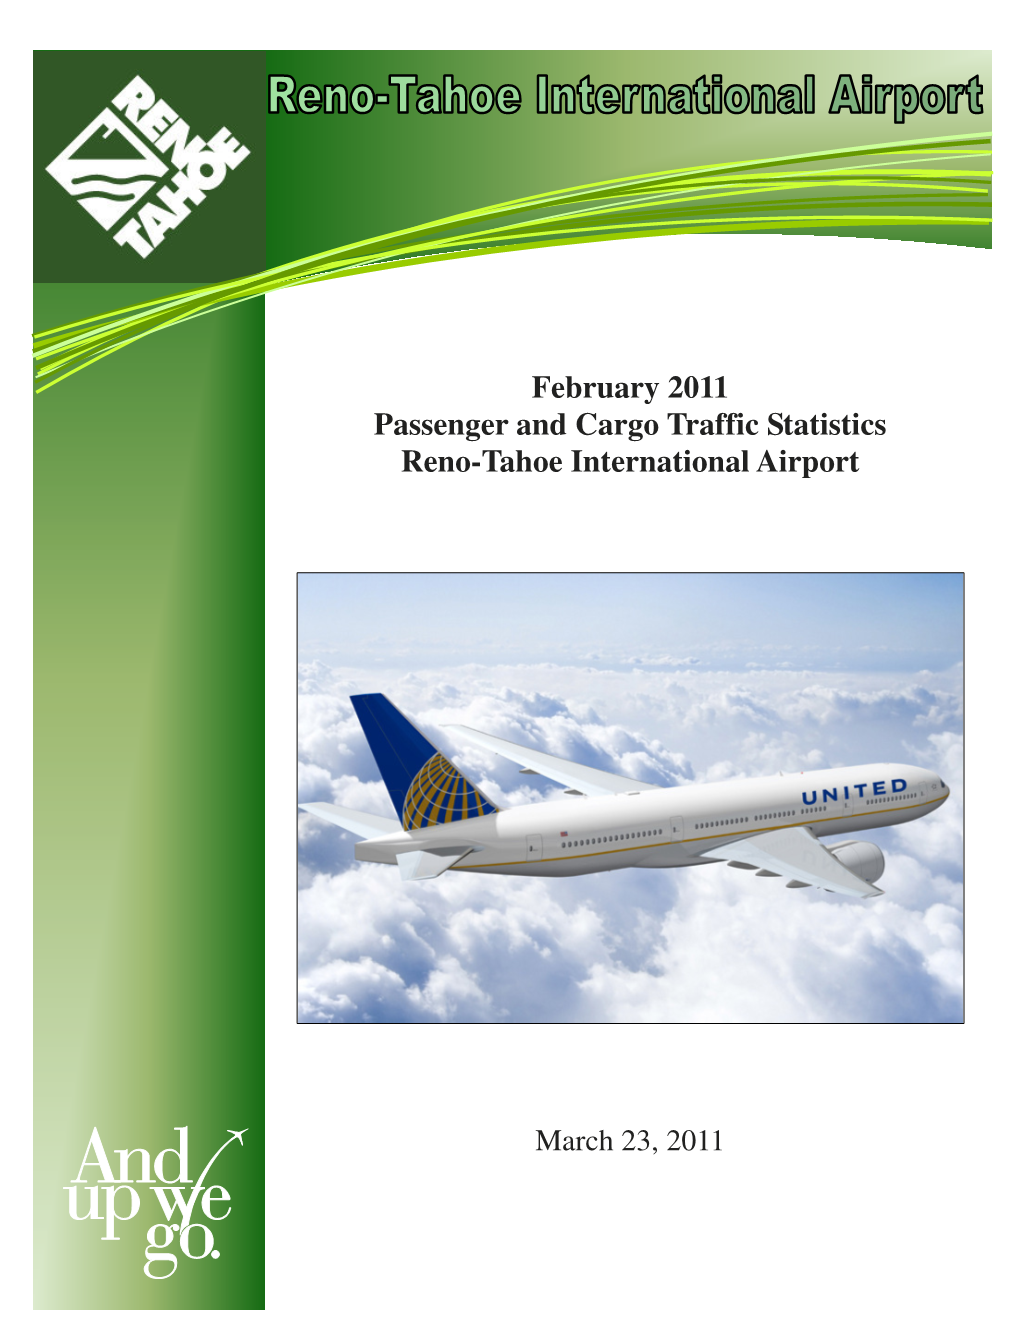 February 2011 Passenger and Cargo Traffic Statistics Reno-Tahoe International Airport